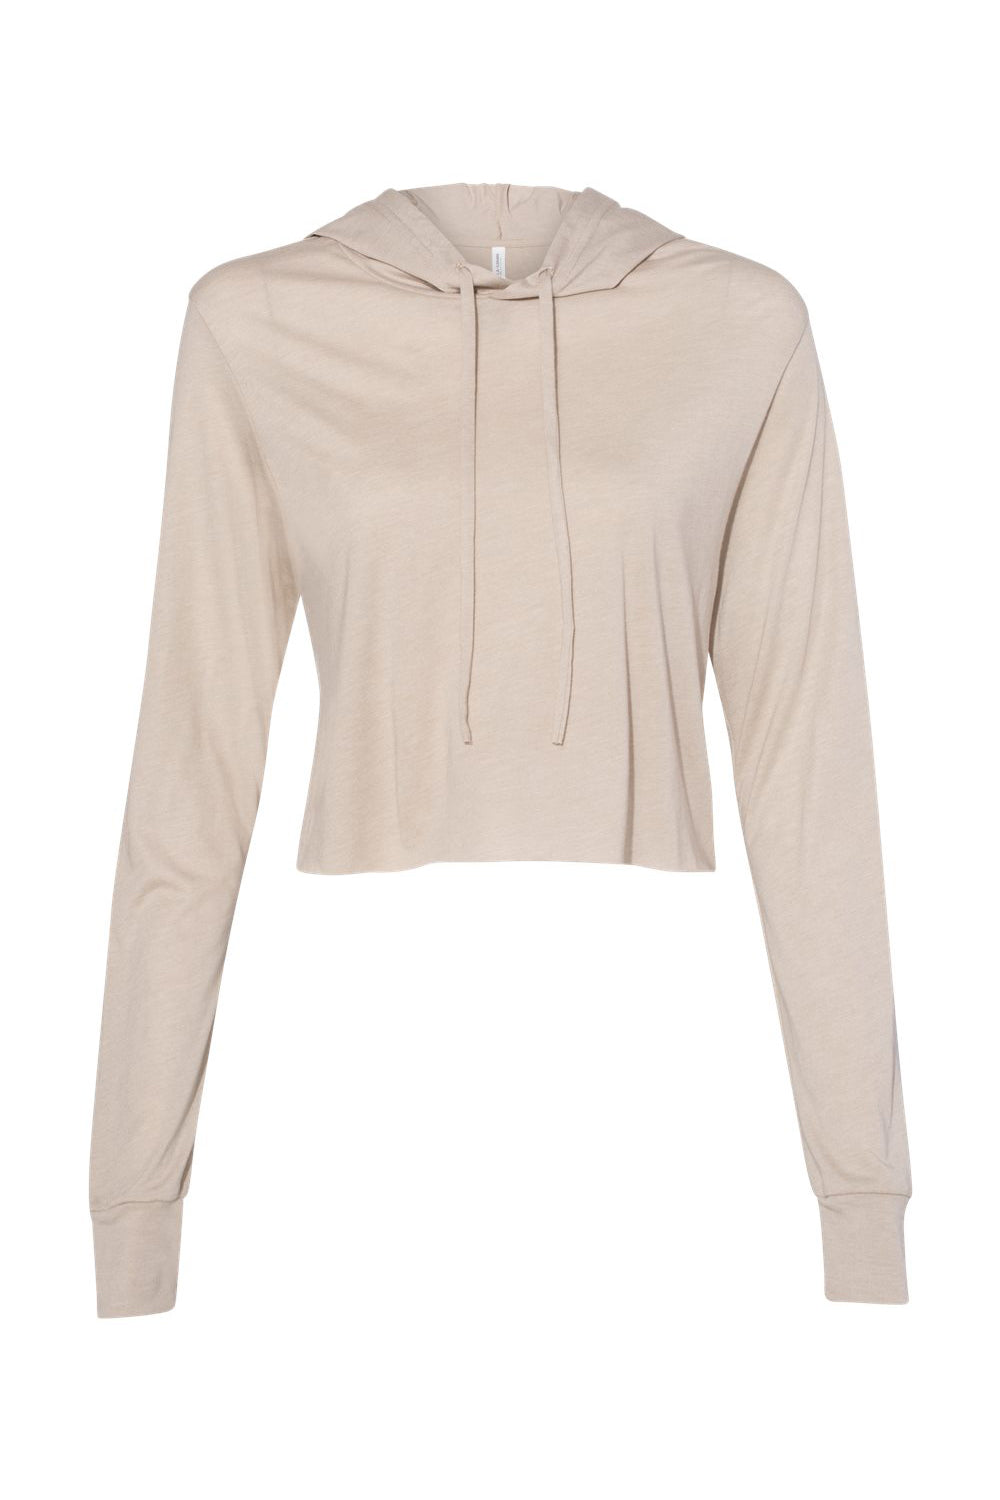 Bella + Canvas 8512 Womens Crop Long Sleeve Hooded Sweatshirt Hoodie Tan Flat Front